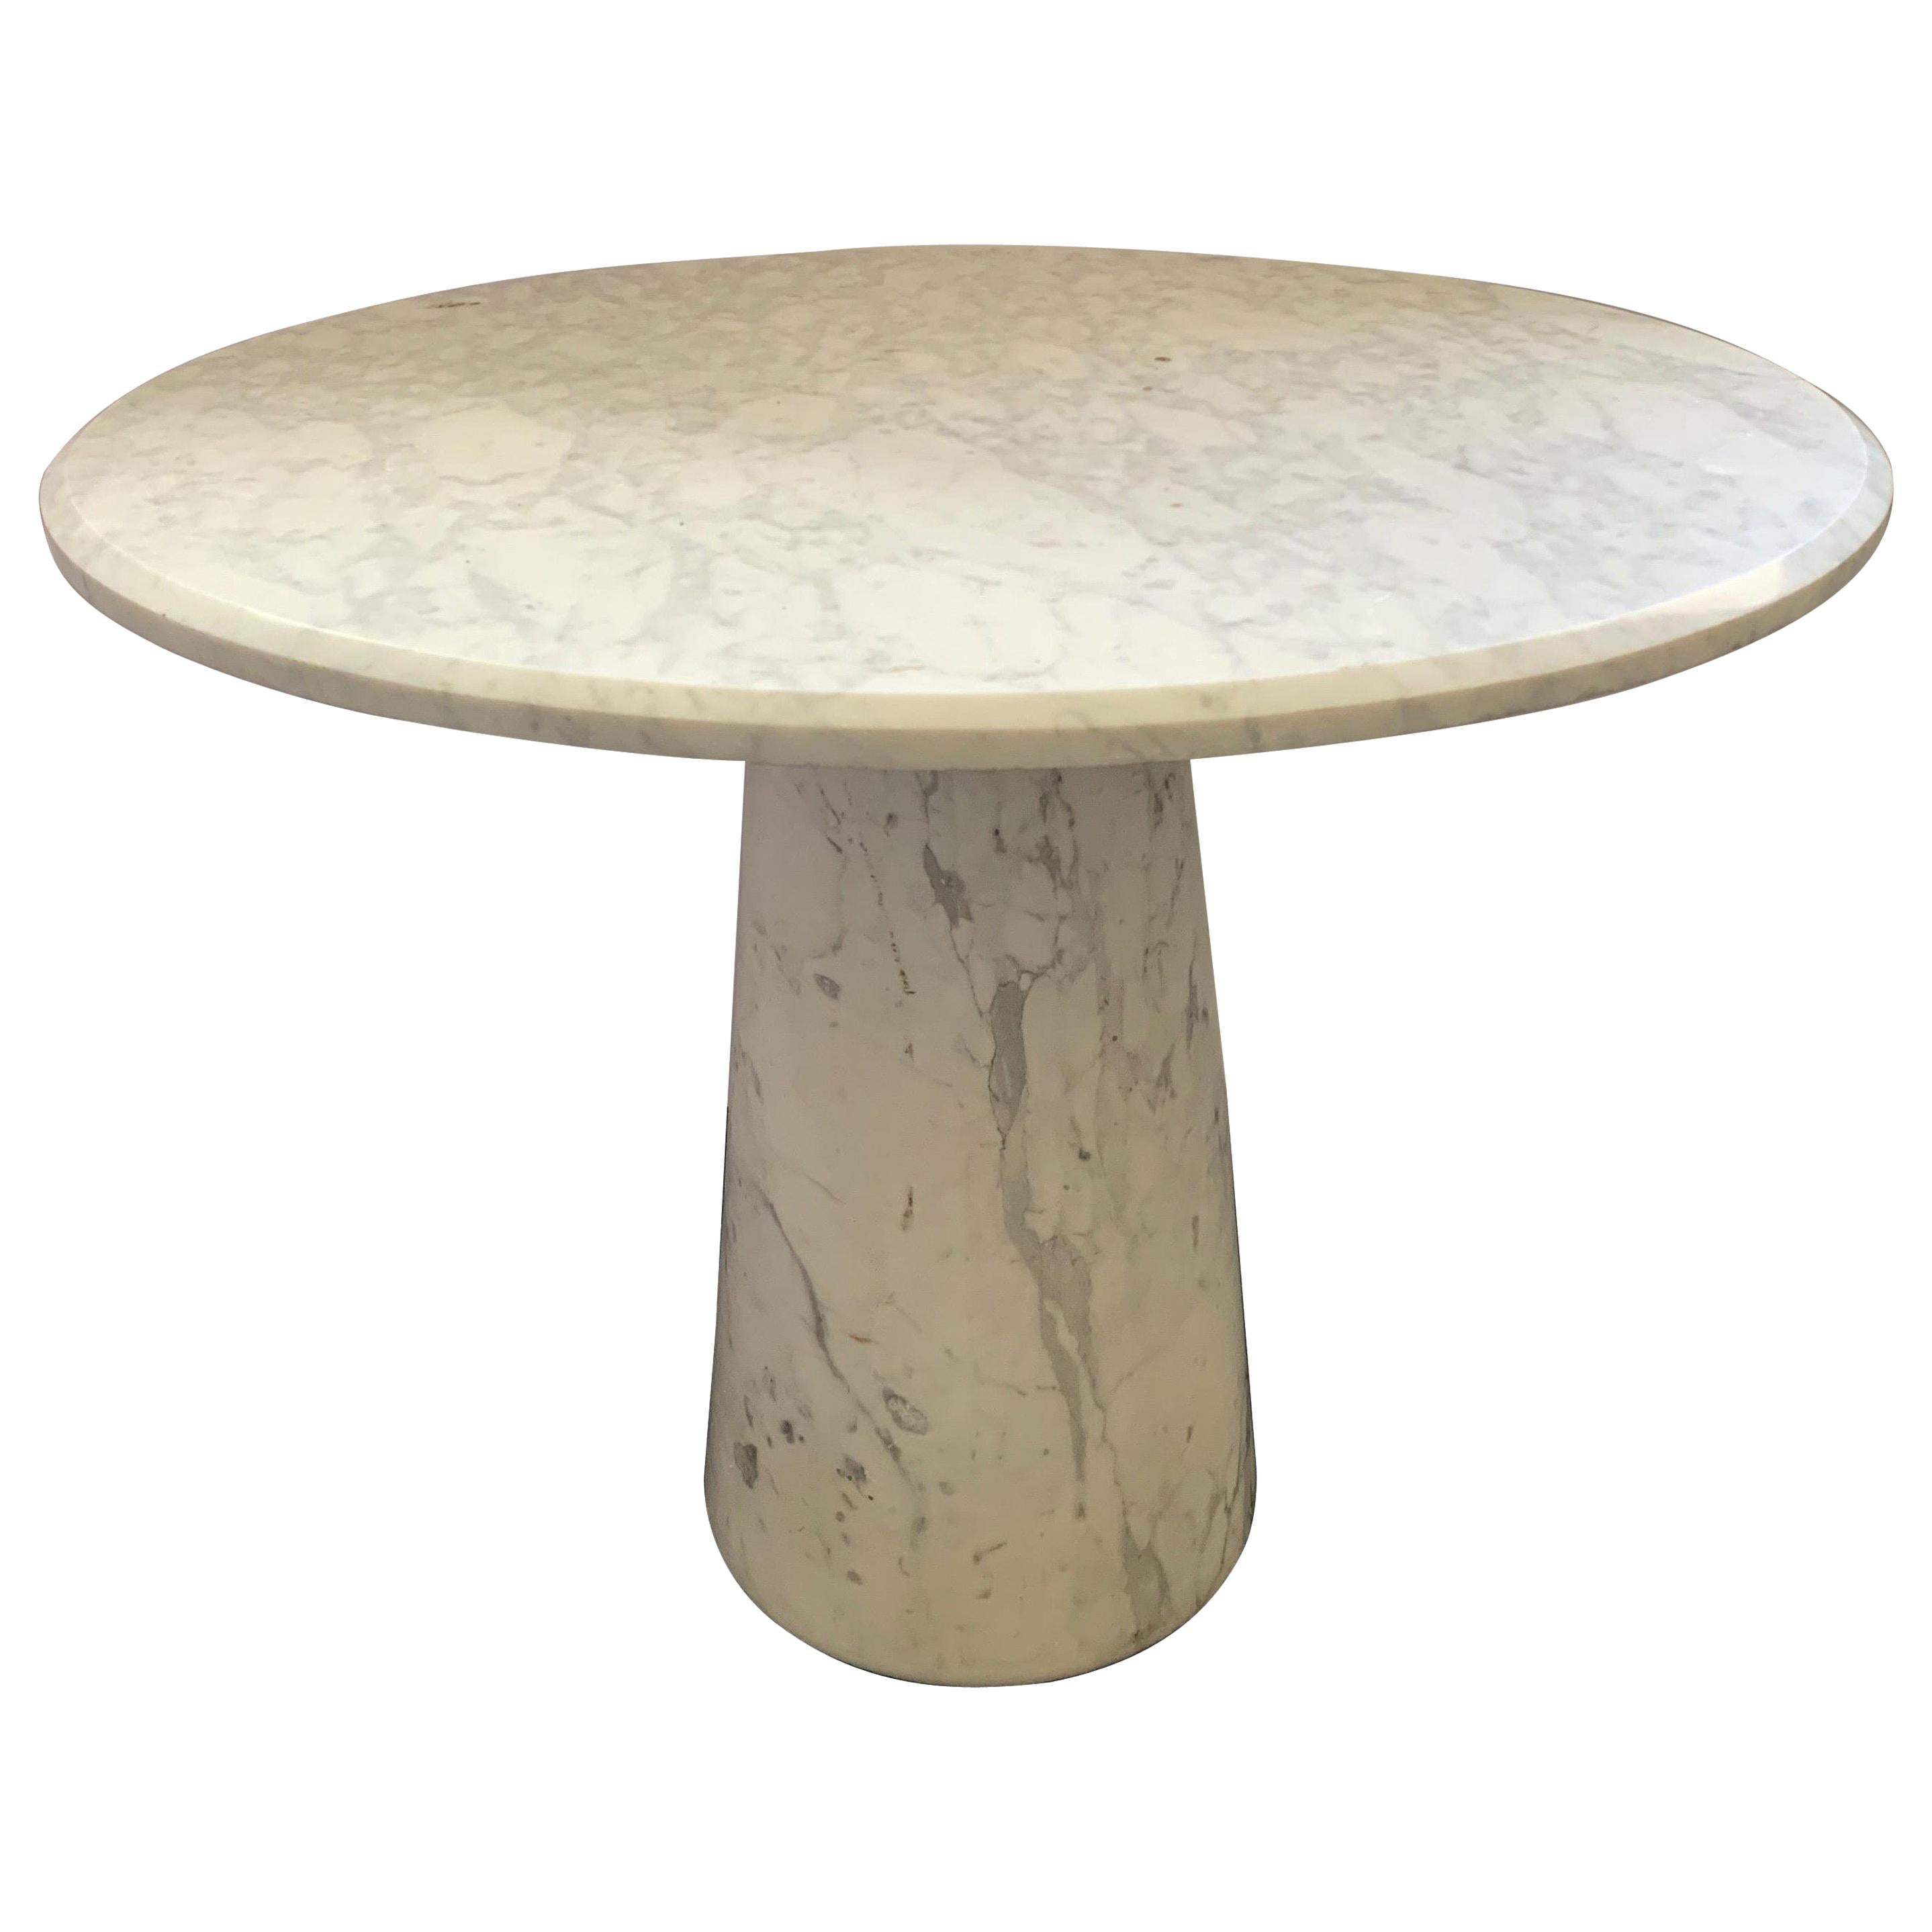 Vintage Italian Midcentury Carrara Marble Table